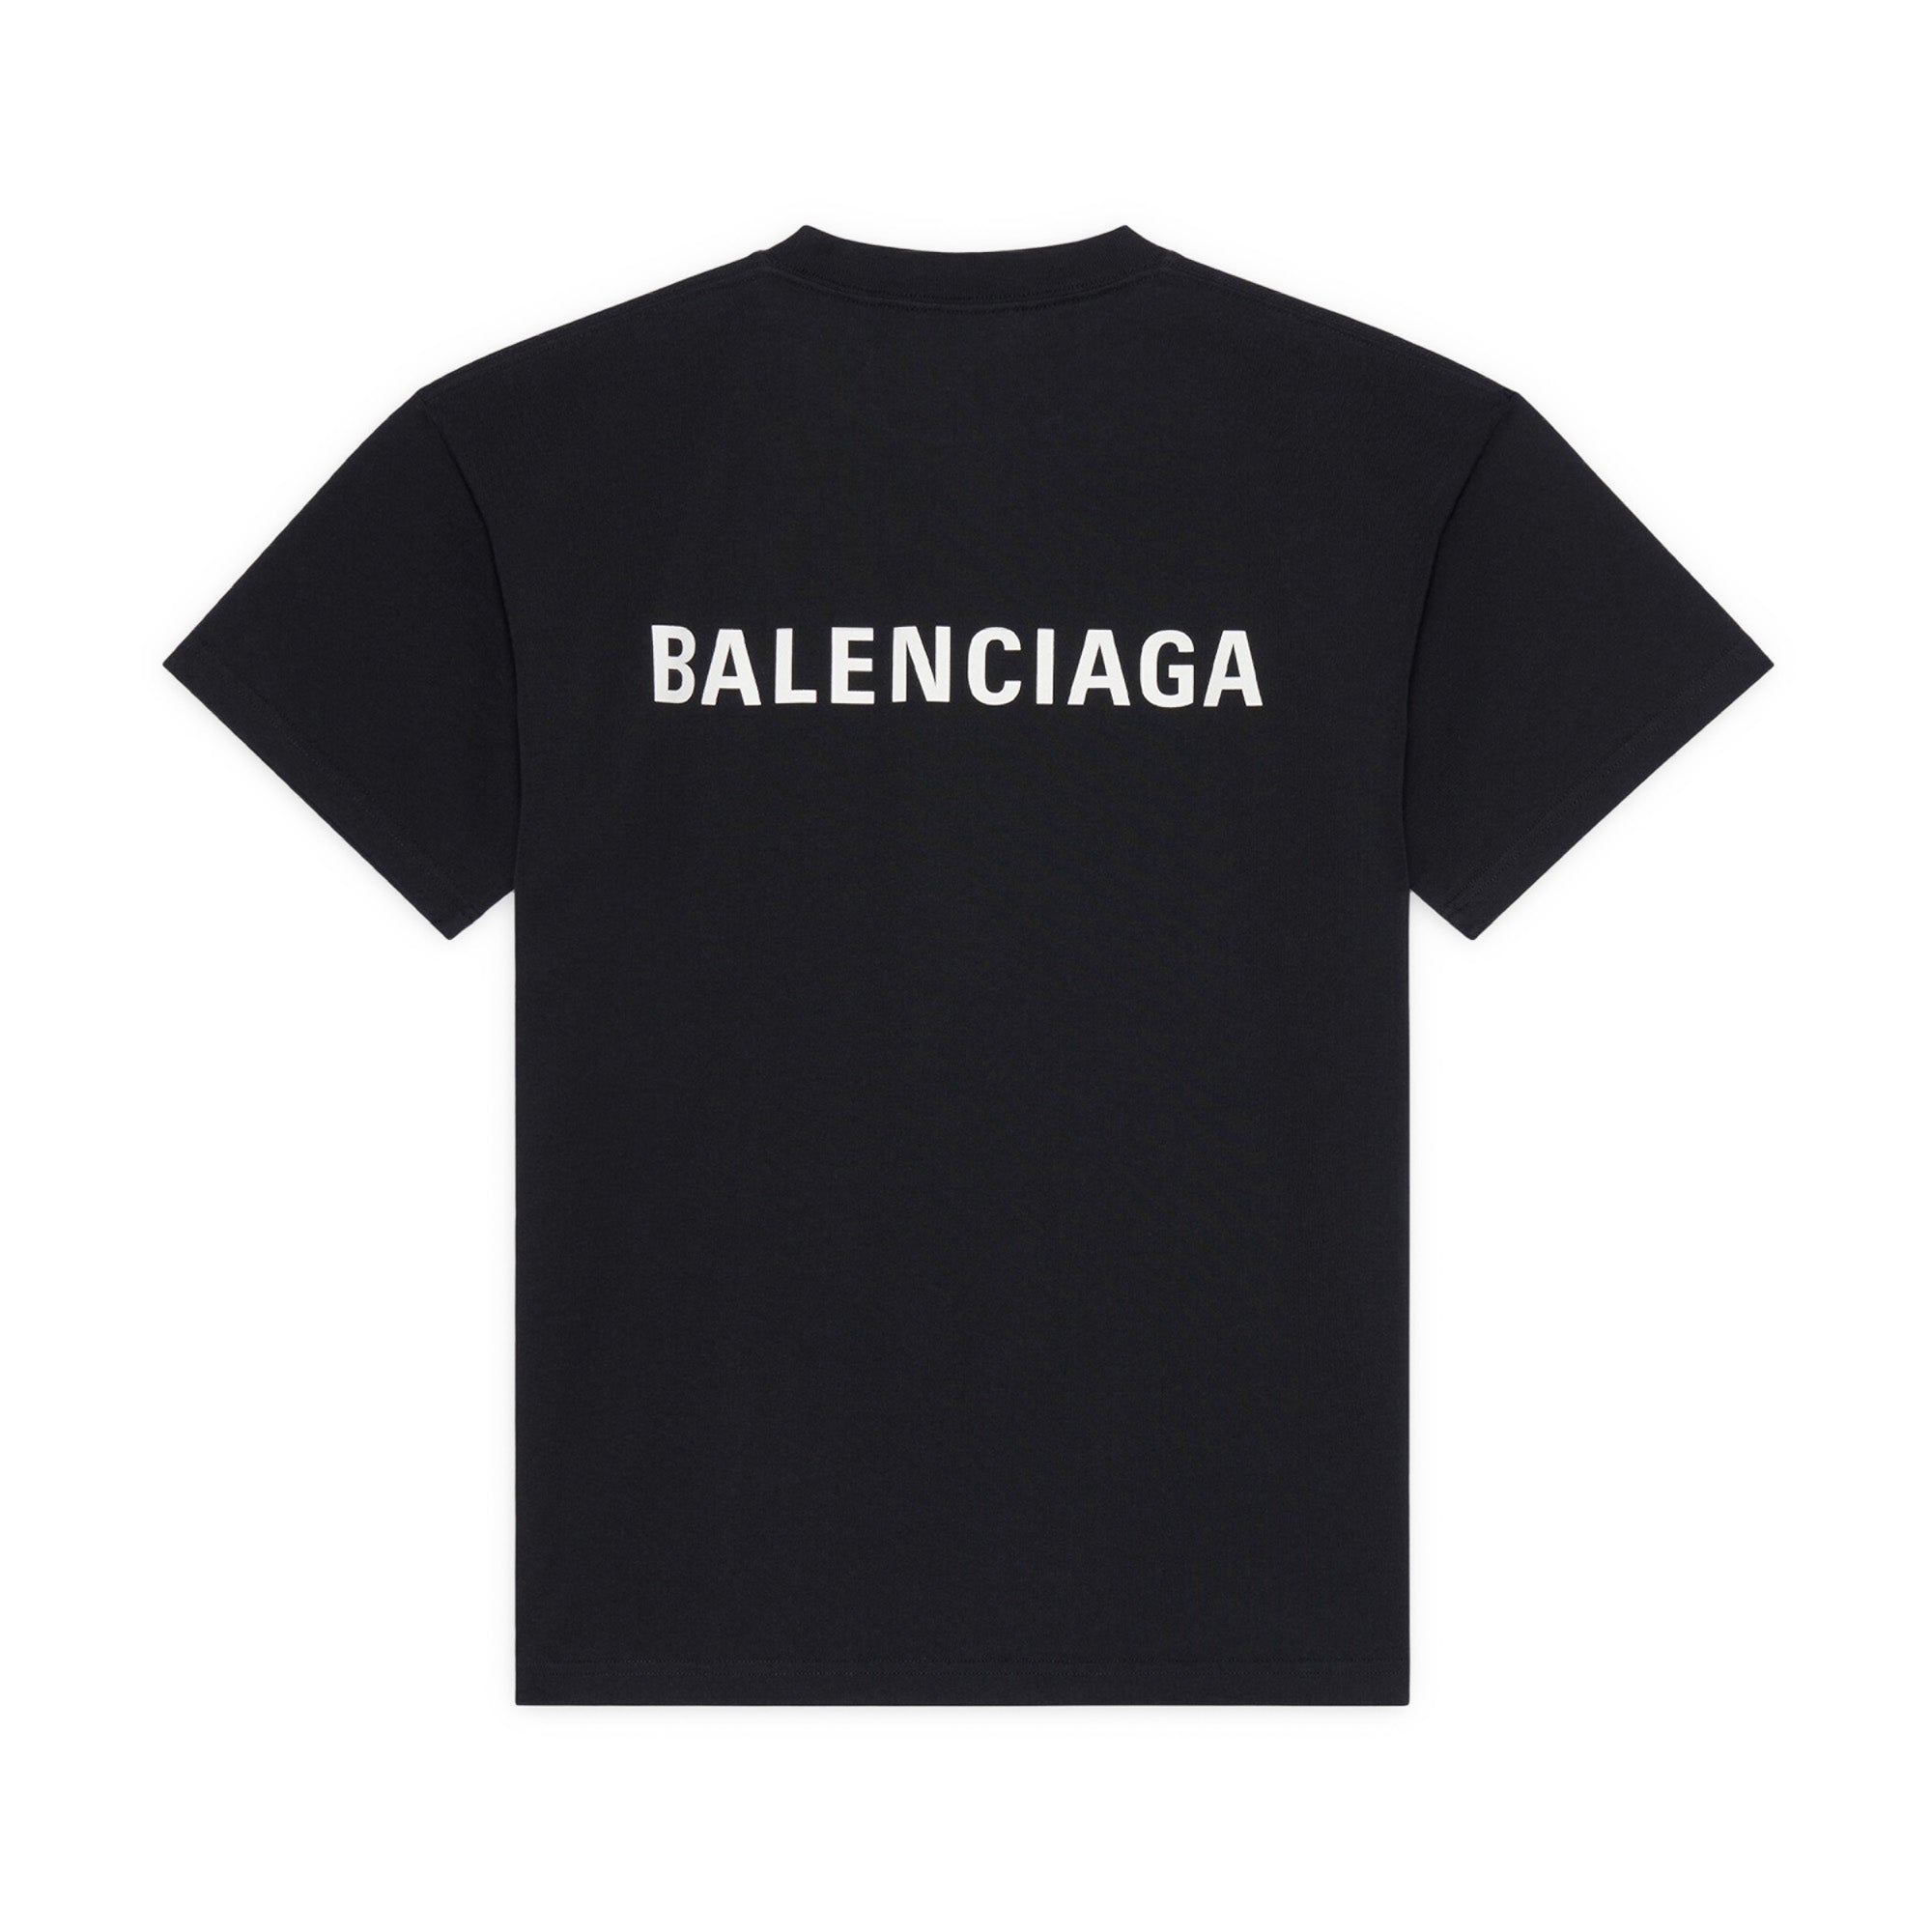 Womens Political Campaign Tshirt Small Fit in Black  Balenciaga NL